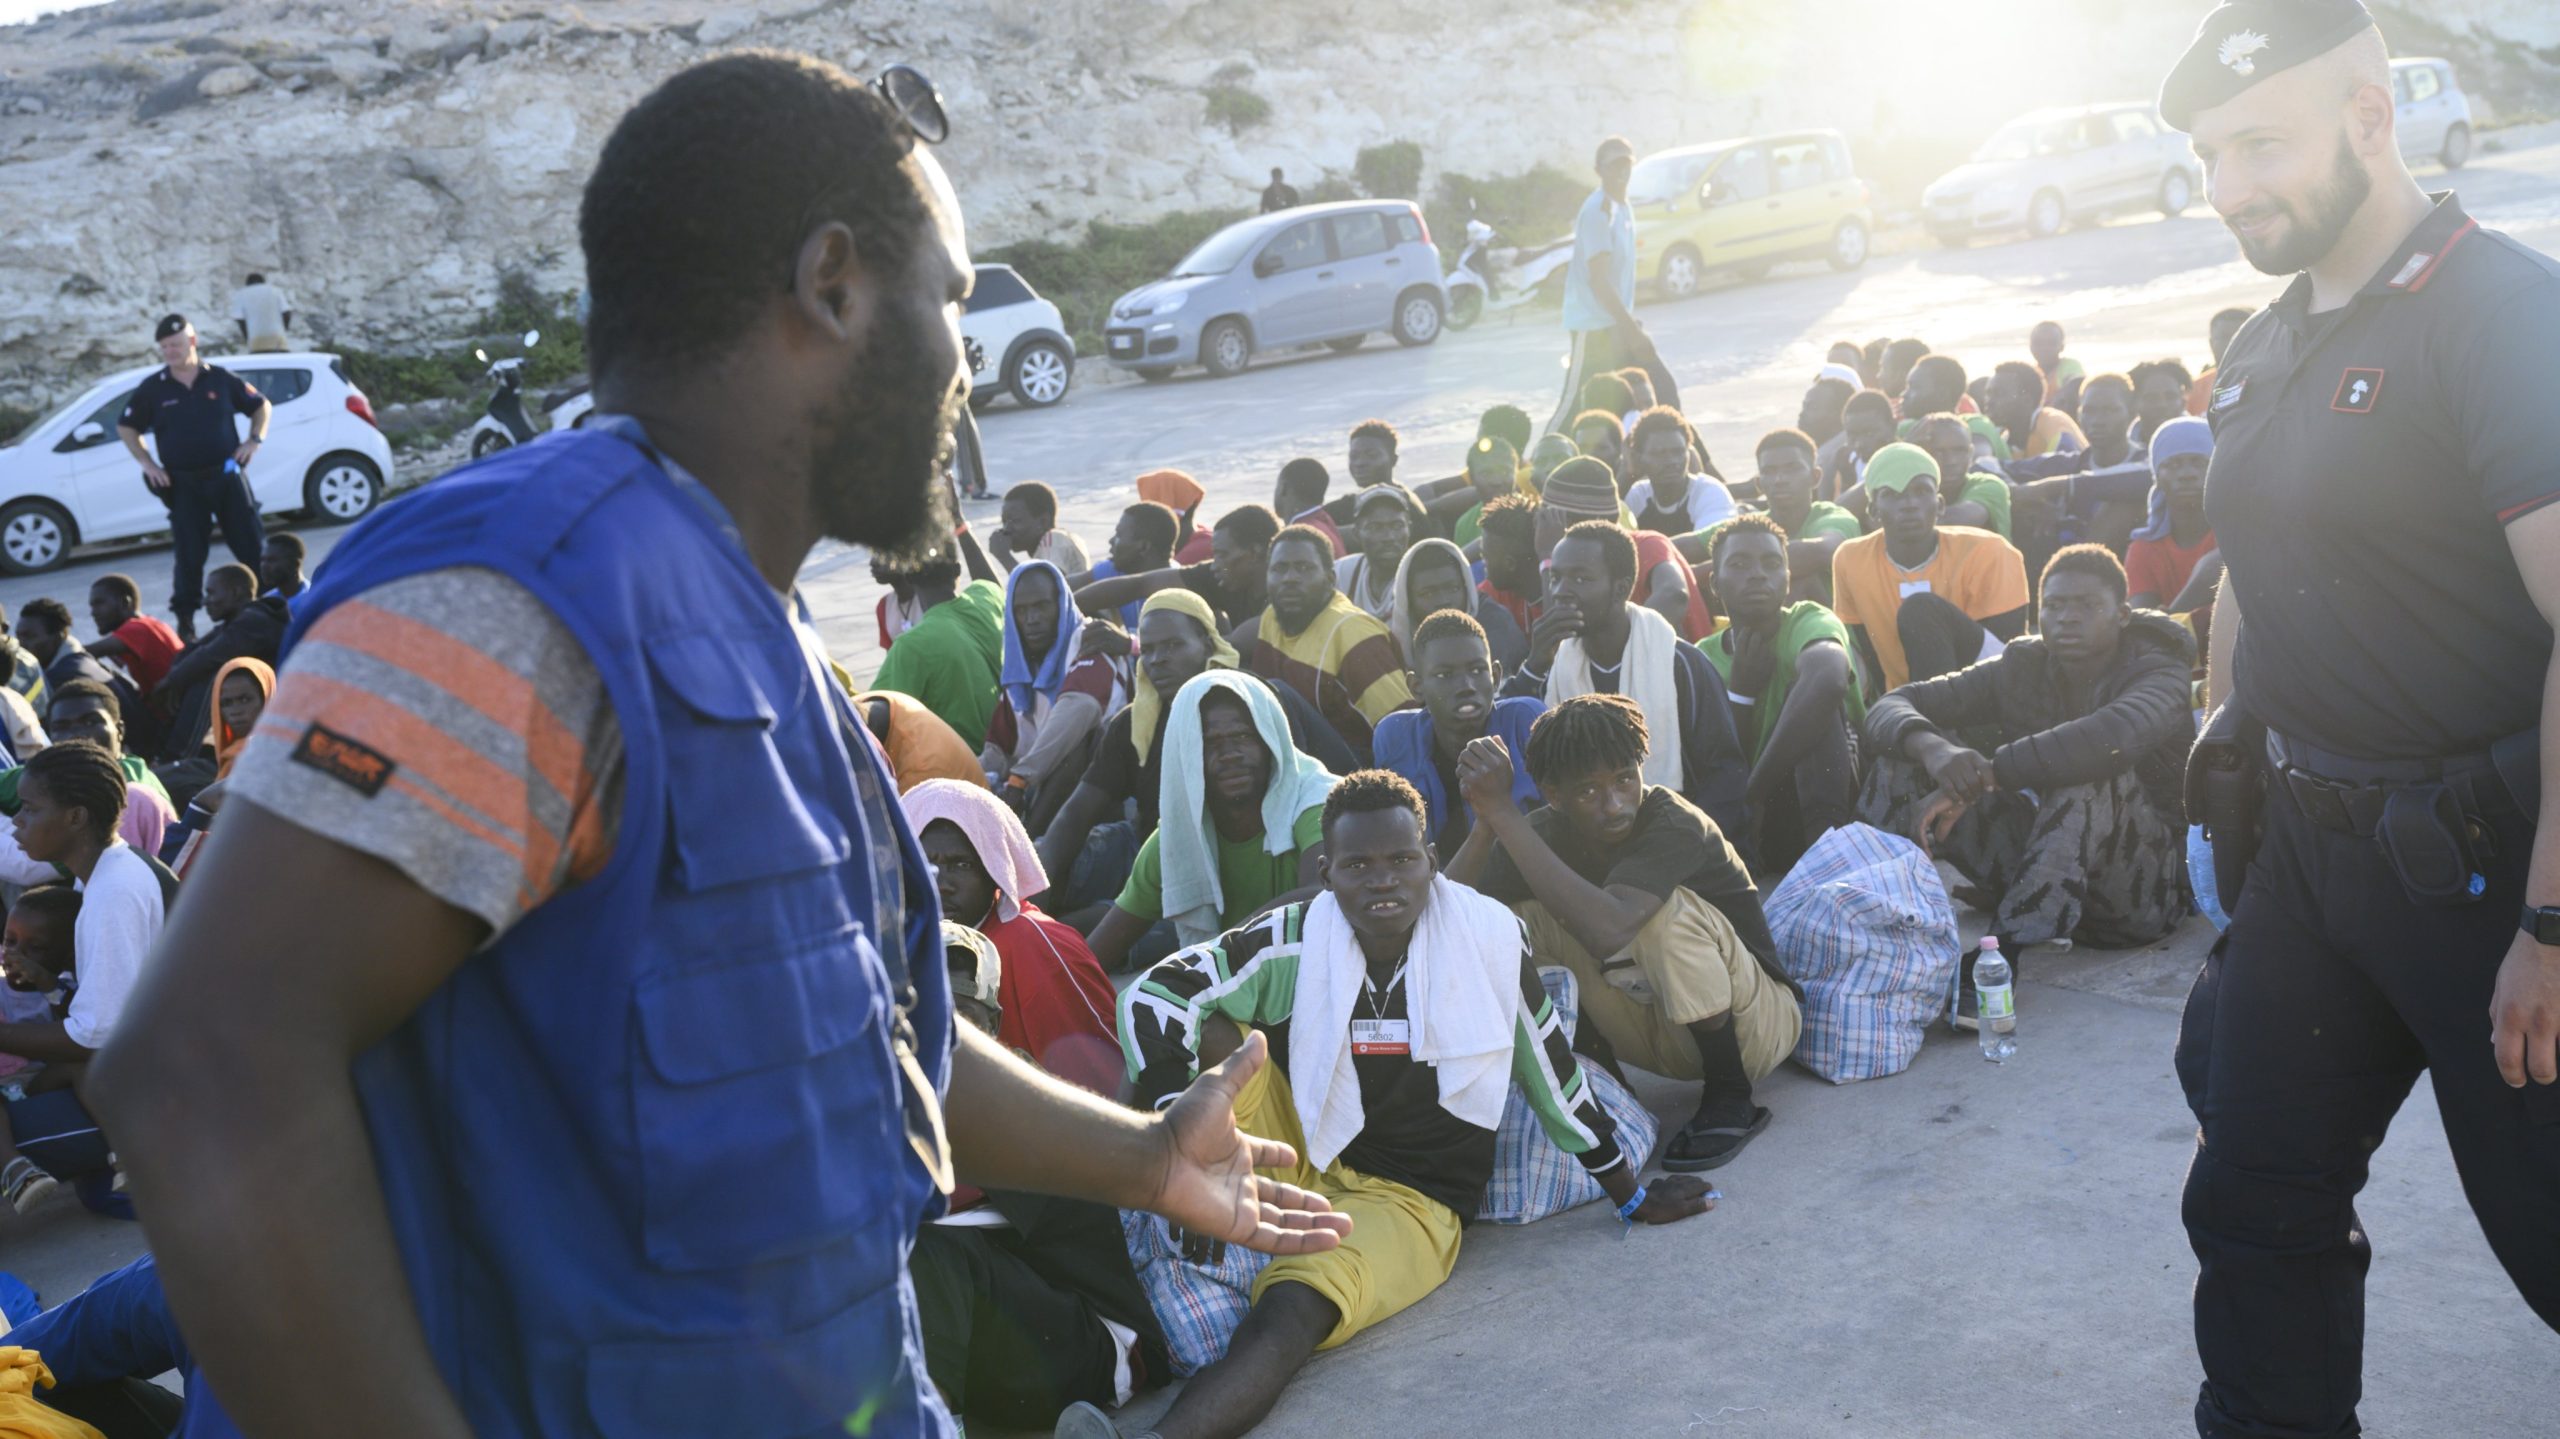 Europa: França e Itália ponderam adotar uma posição mais dura em relação à crise migratória